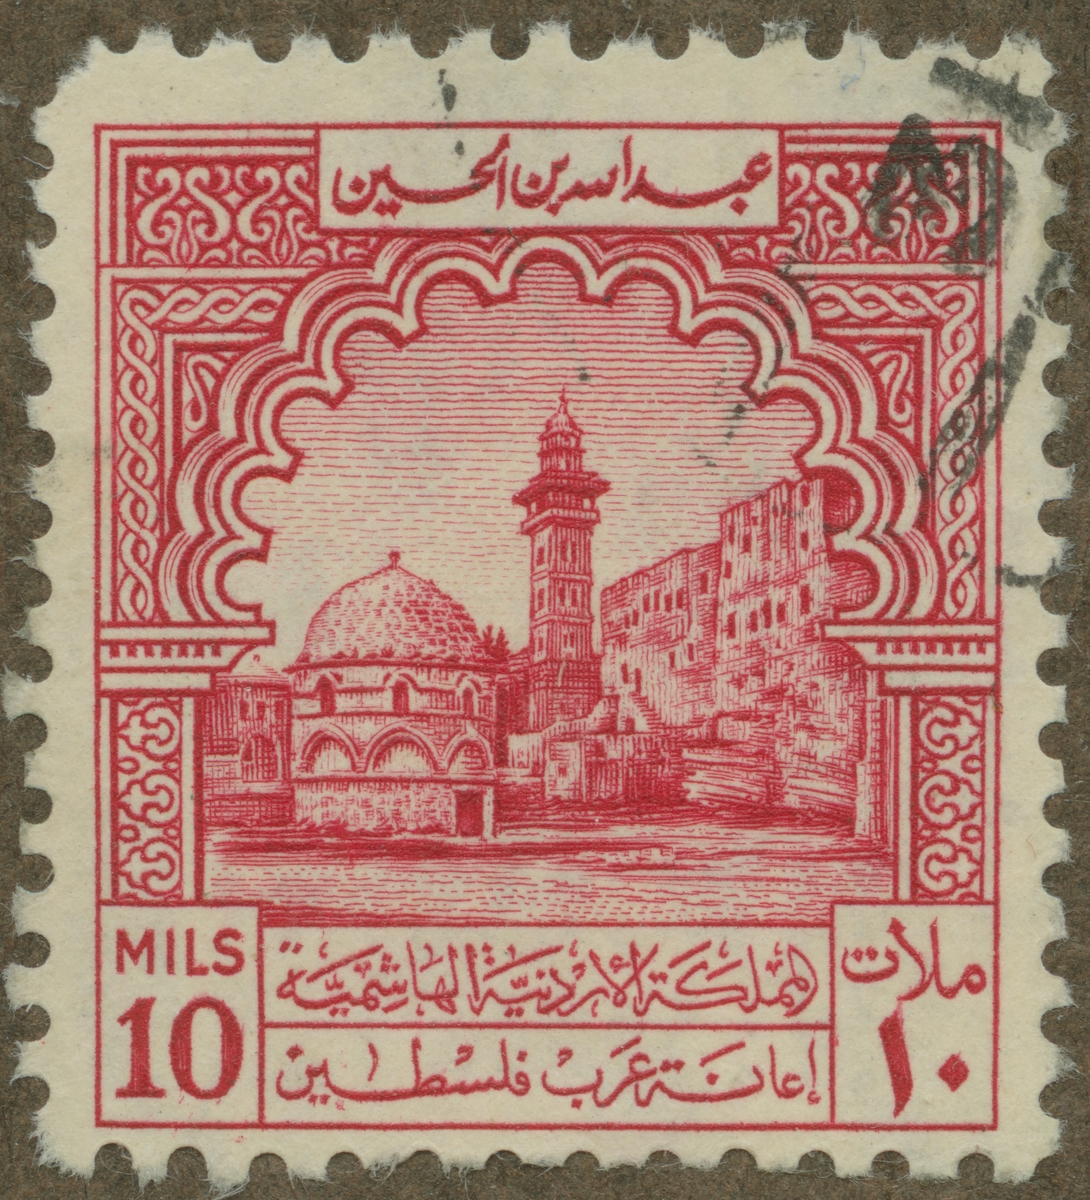 Frimärke ur Gösta Bodmans filatelistiska motivsamling, påbörjad 1950.
Frimärke från Jordanien 1947. Tempeldistriktet i Jerusalem.